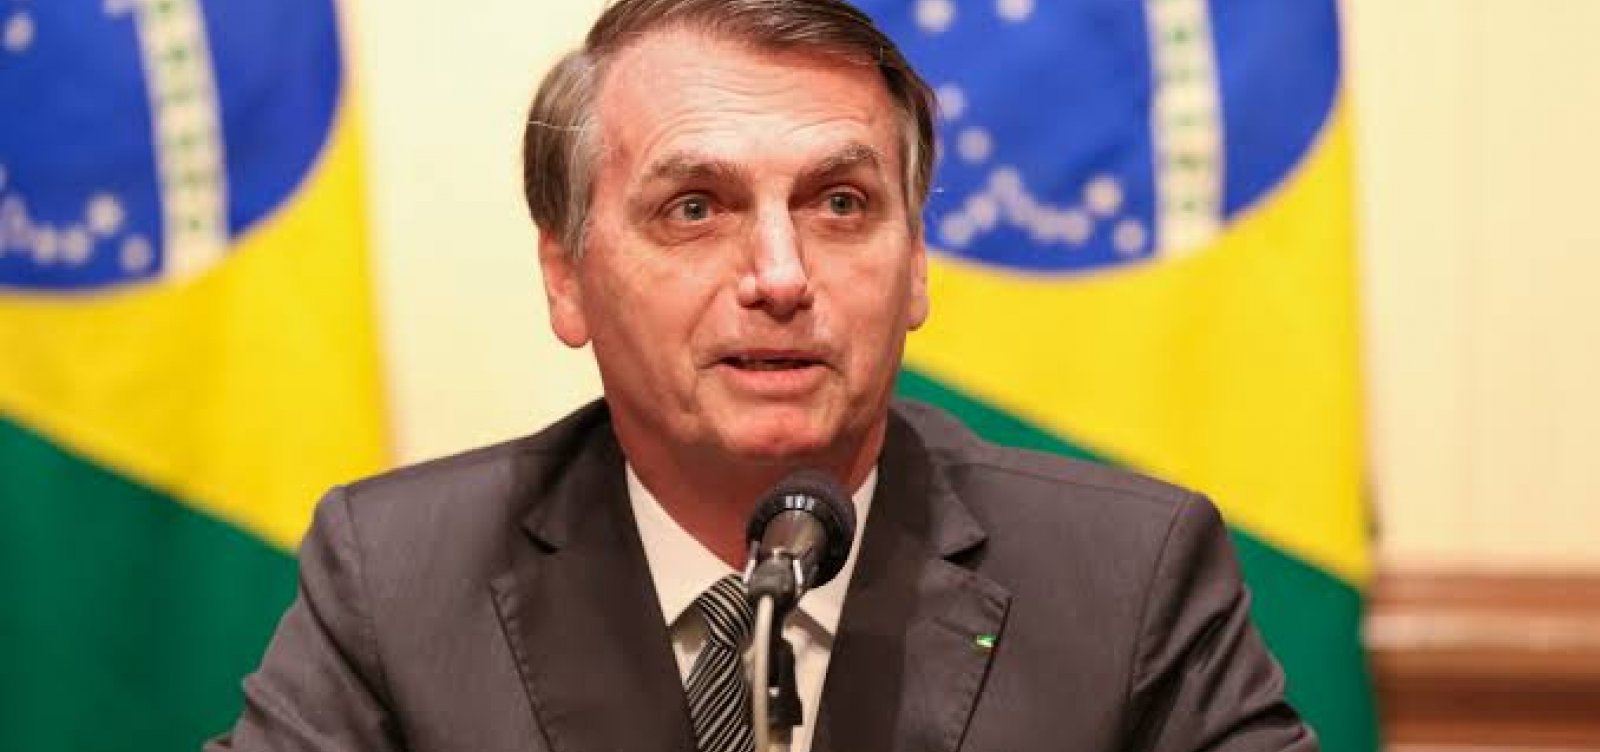 Bolsonaro desembarca nesta sexta-feira em Salvador para participar de evento religioso